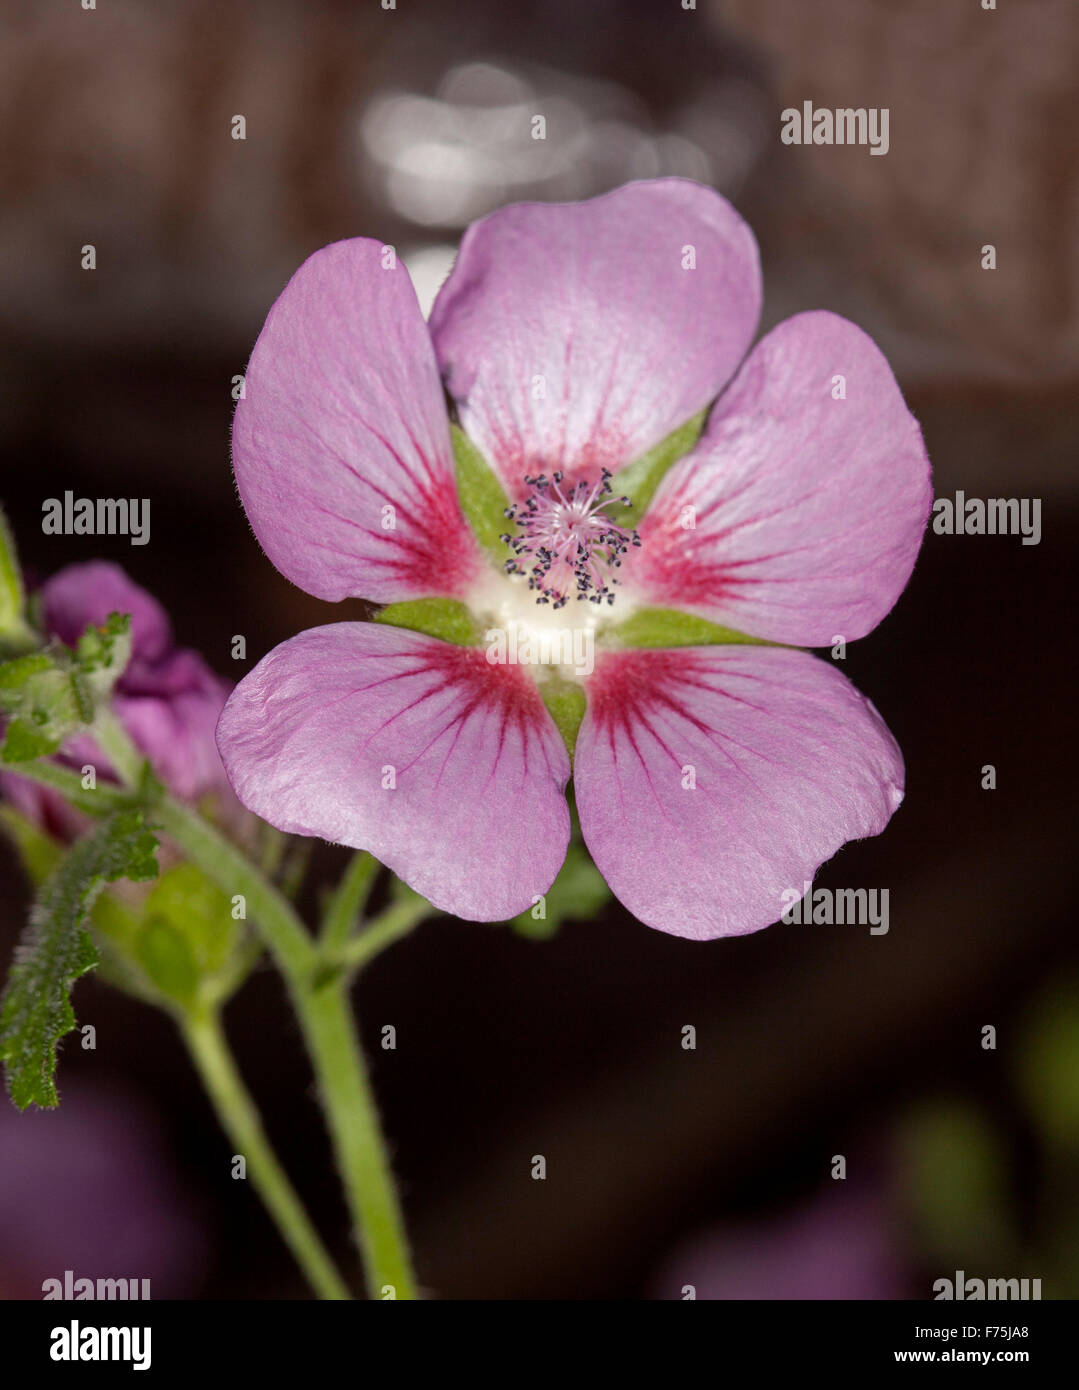 Attrayant et délicate fleur rose avec des touches de rouge de mauve du Cap,  Anisodontea légèrement hybride Strawberry', fond sombre Photo Stock - Alamy